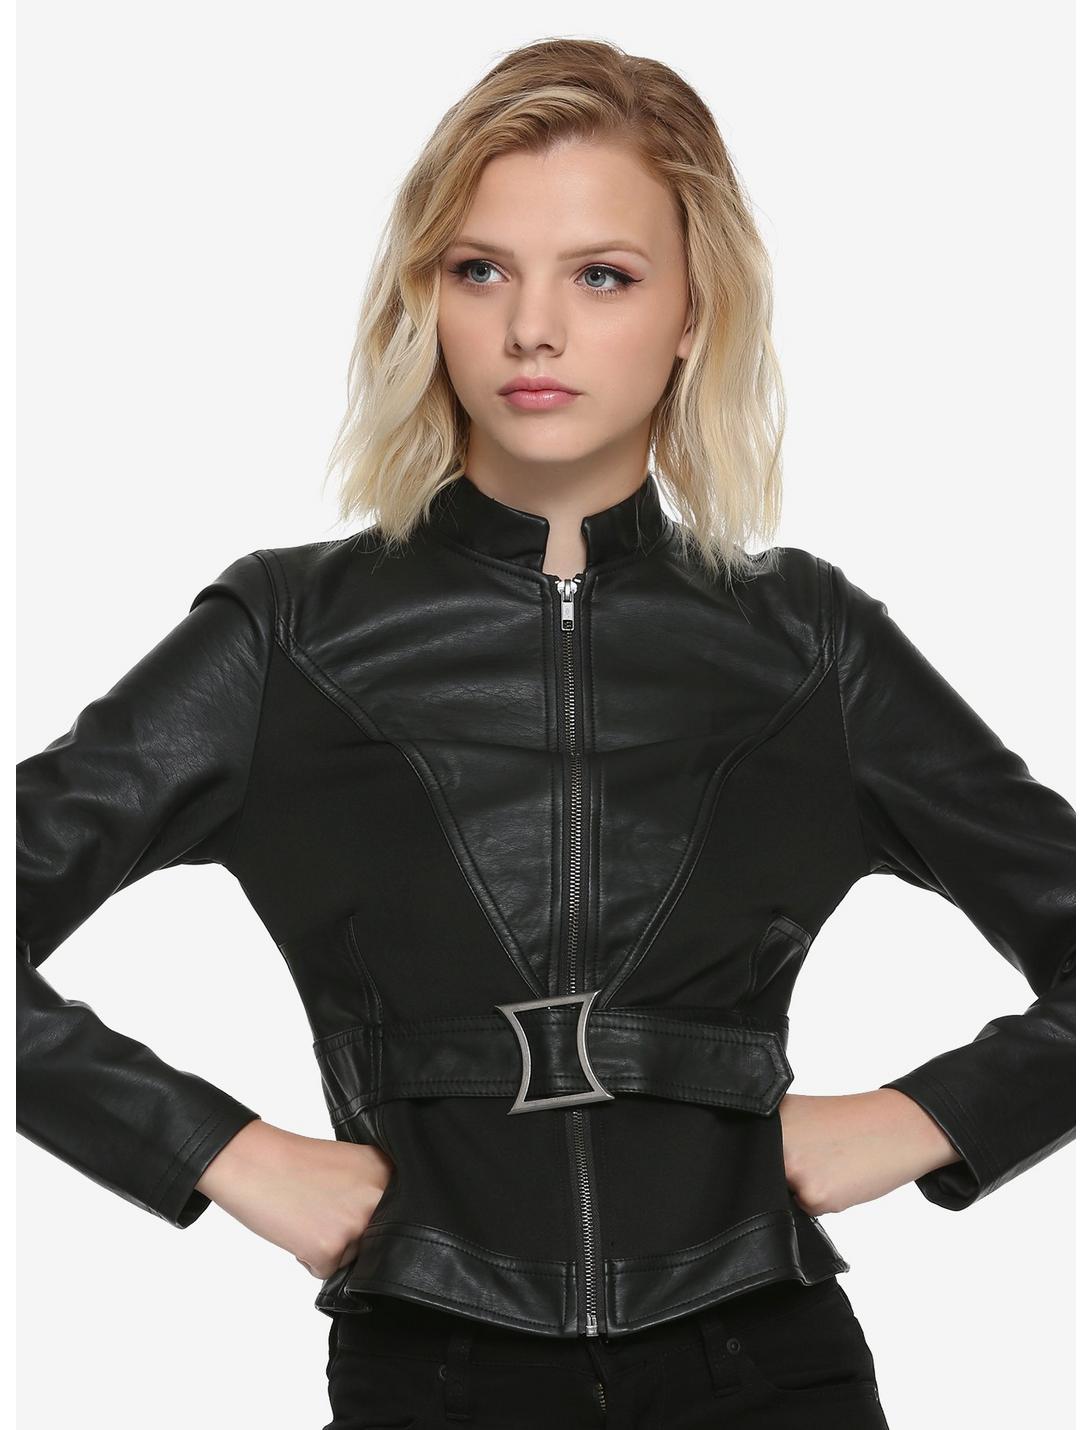 Marvel Black Widow Girls Belted Jacket, BLACK, hi-res